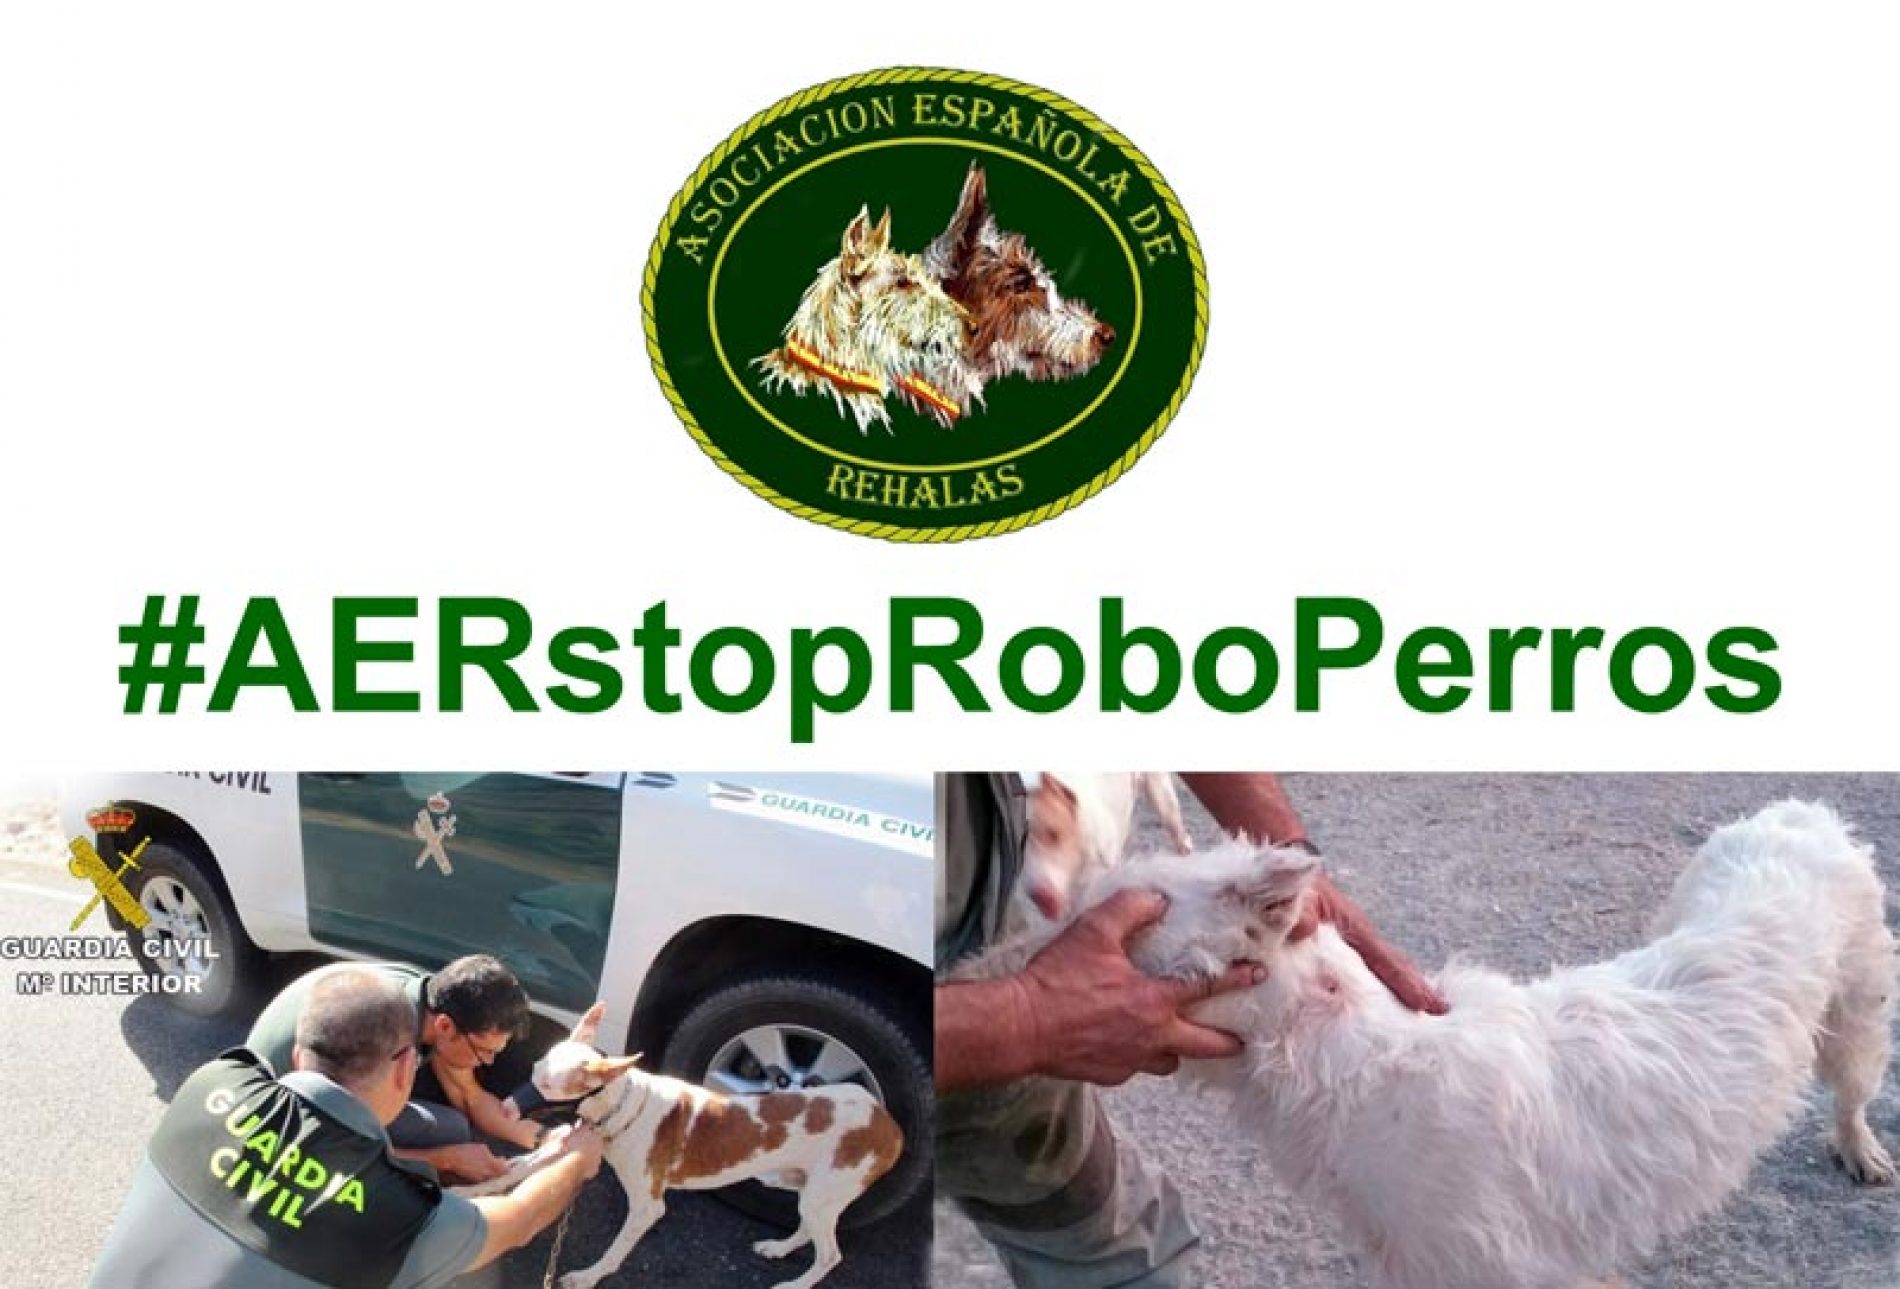 La Asociación Española de Rehalas lanza la campaña #AERstopRoboPerros